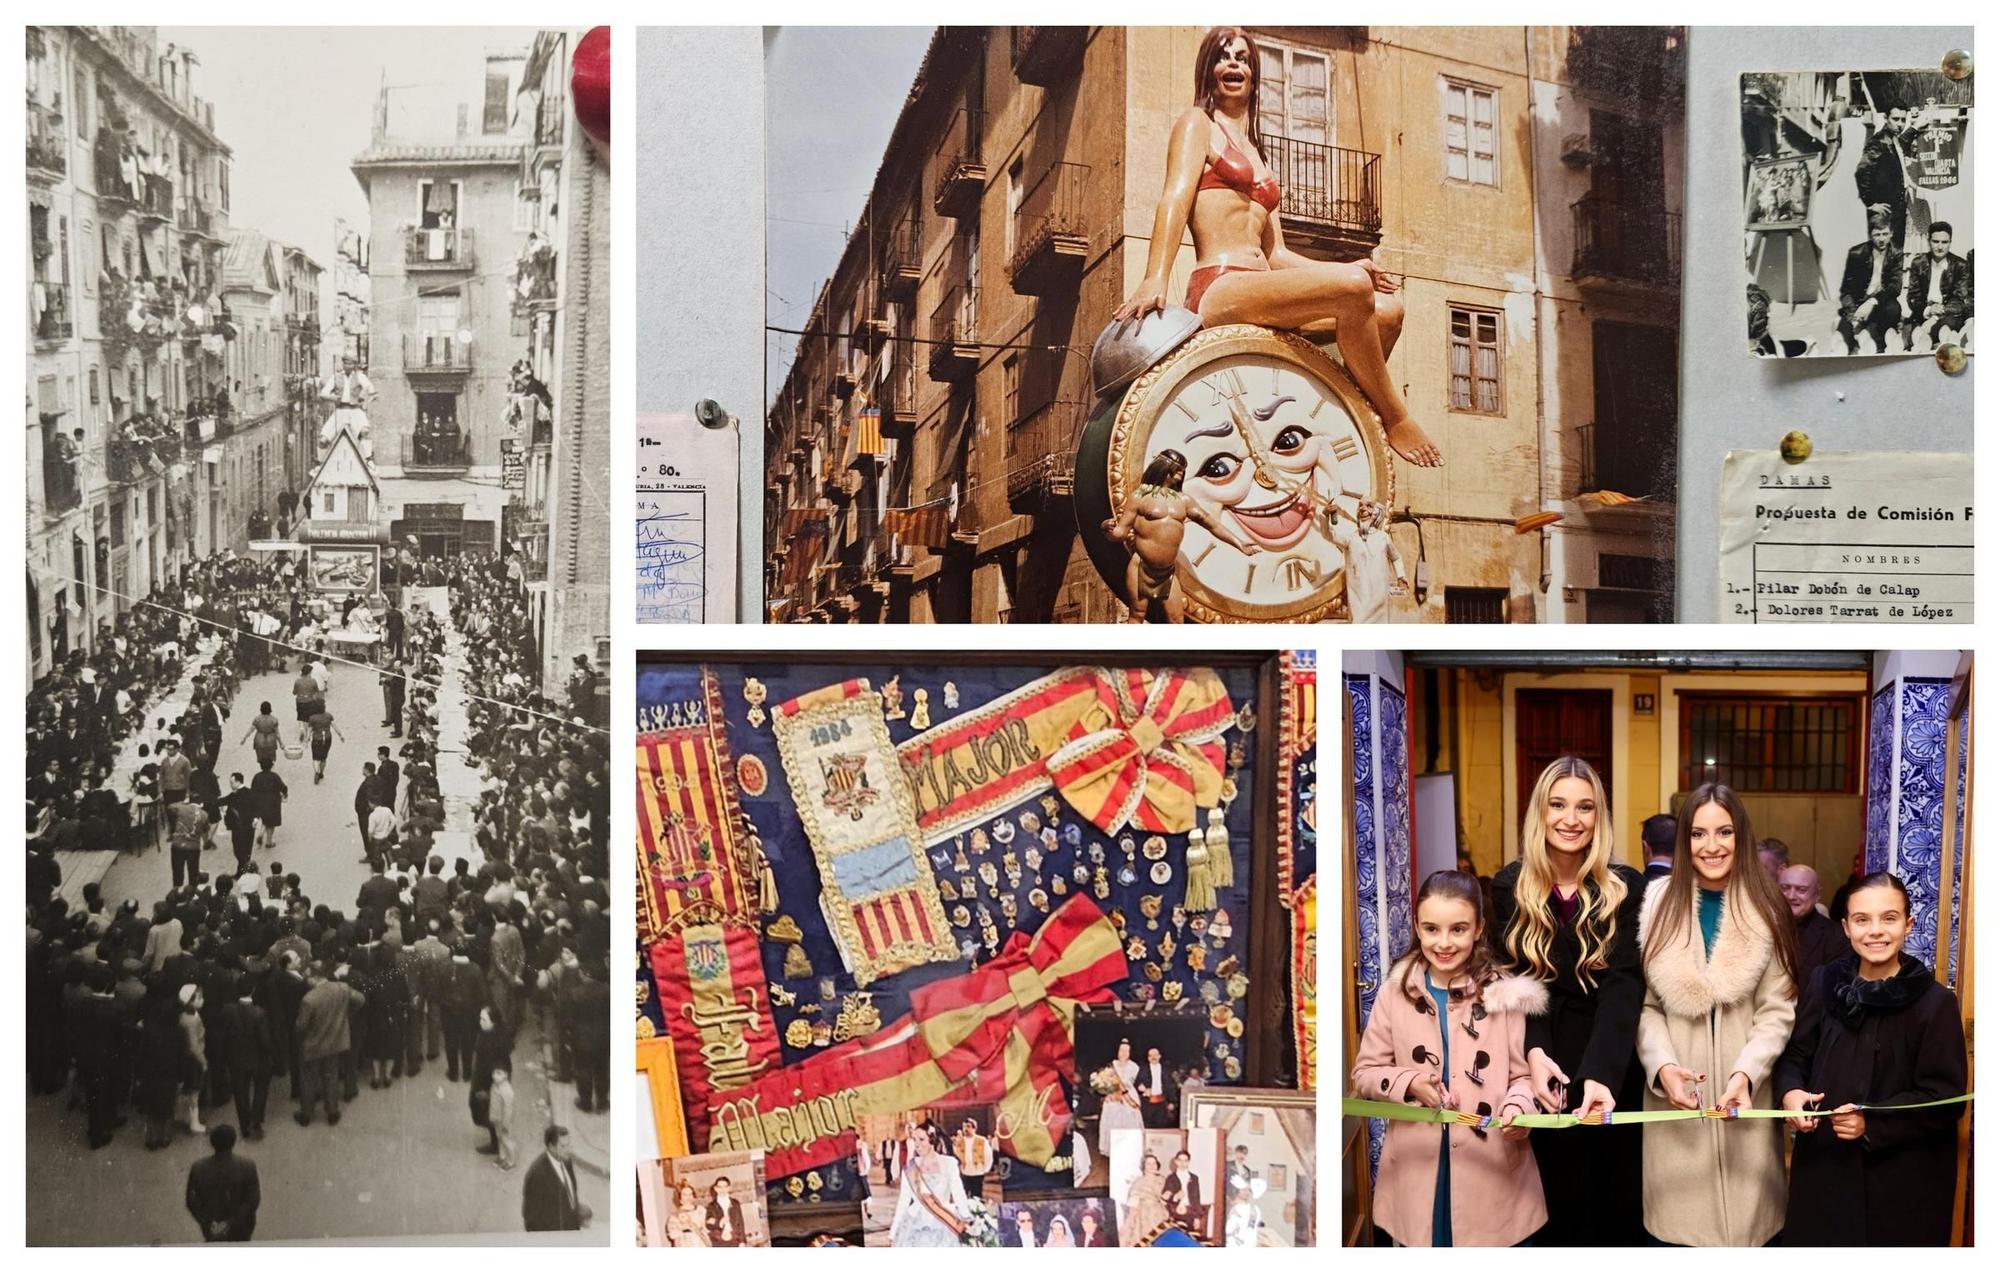 Ripalda-Beneficència exhibe sus 150 años de historia en imágenes